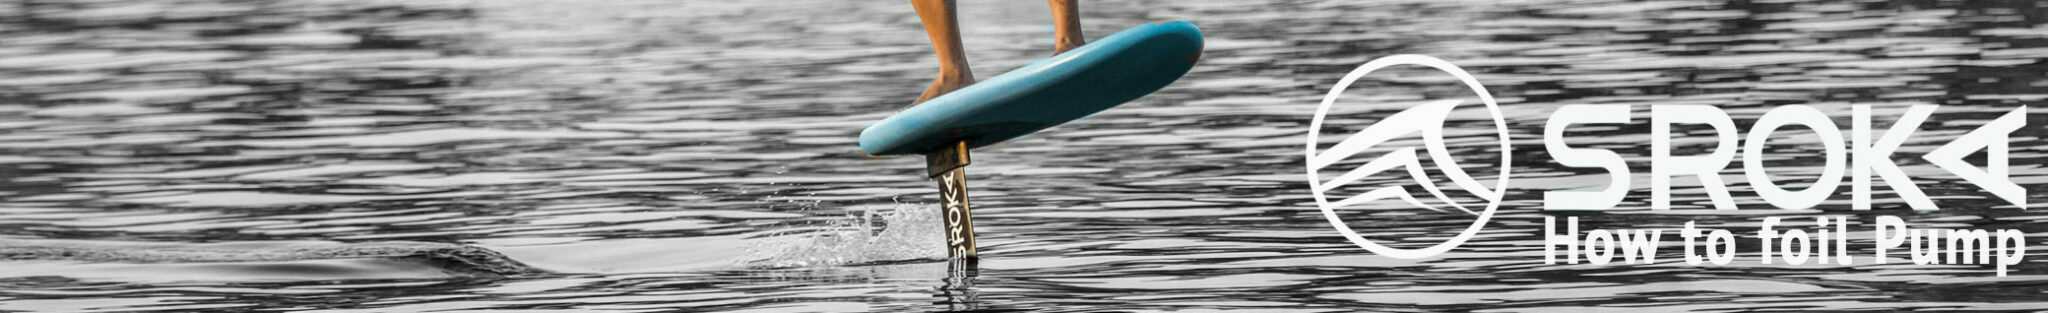 Pomper en surf foil : technique détaillée, perfectionnement et entraînement. SROKA